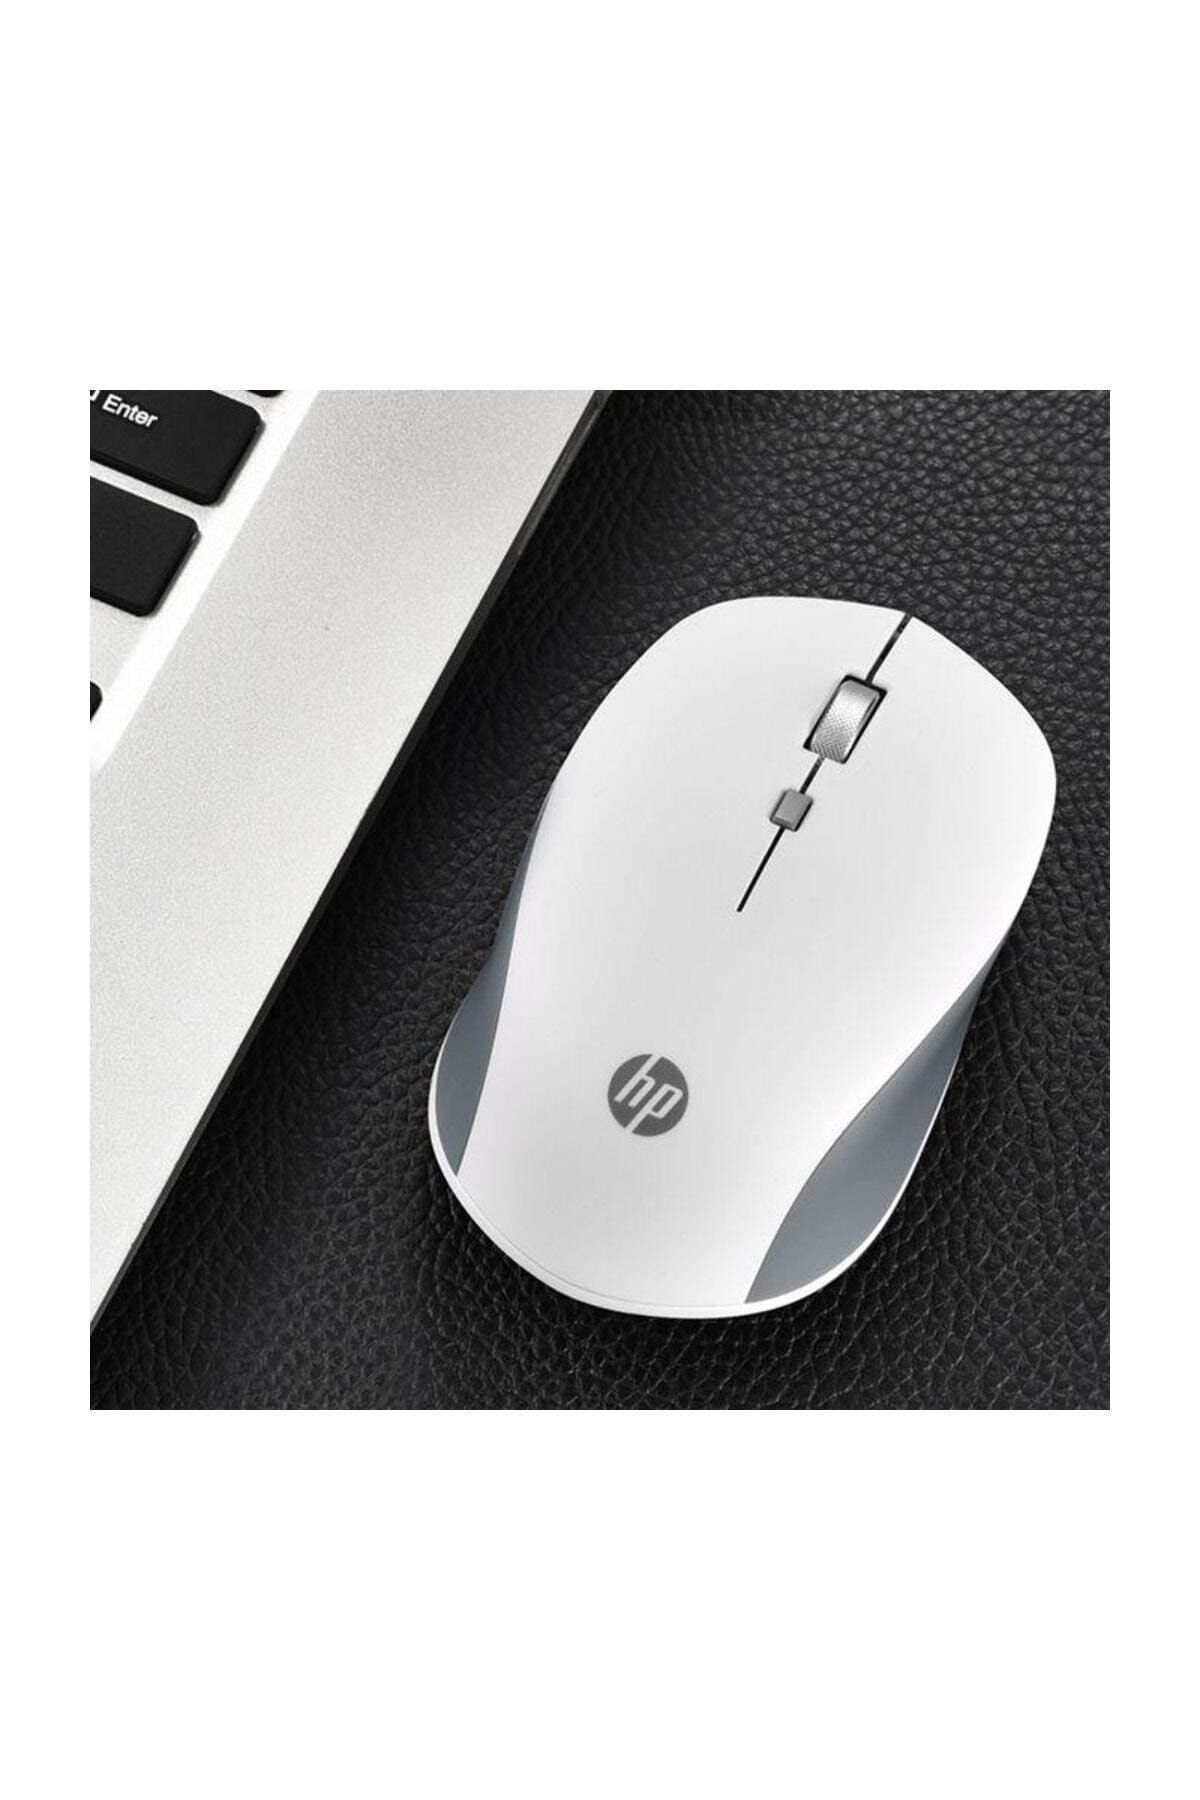 HP S1000 Plus Standart Kablosuz Mouse Iş Ofis Kullanıma Uygun